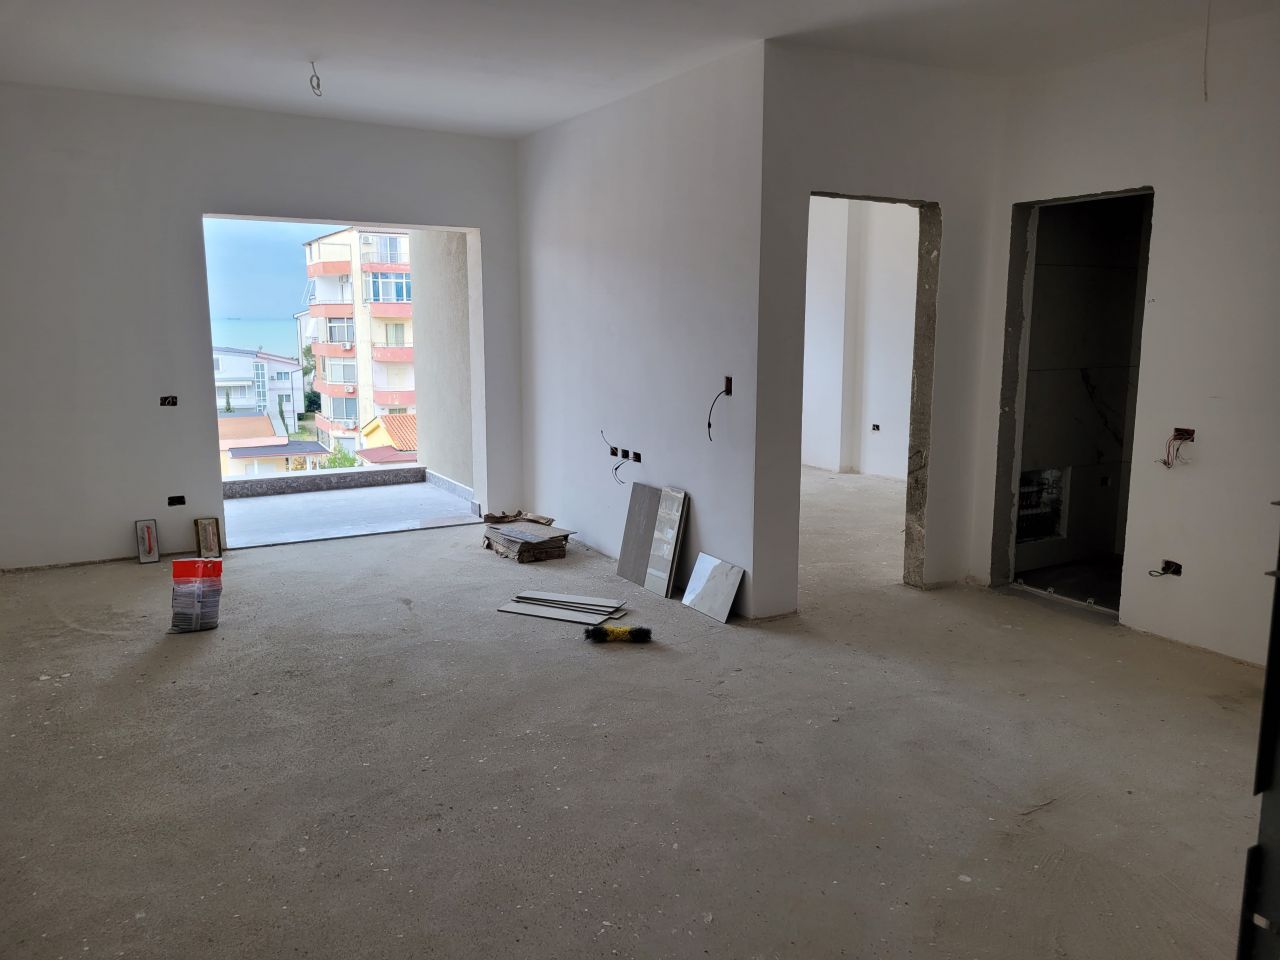 Wohnung Zum Verkauf In Golem Durres Albanien, In Einer Ruhigen Gegend, Nahe Dem Meer Gelegen